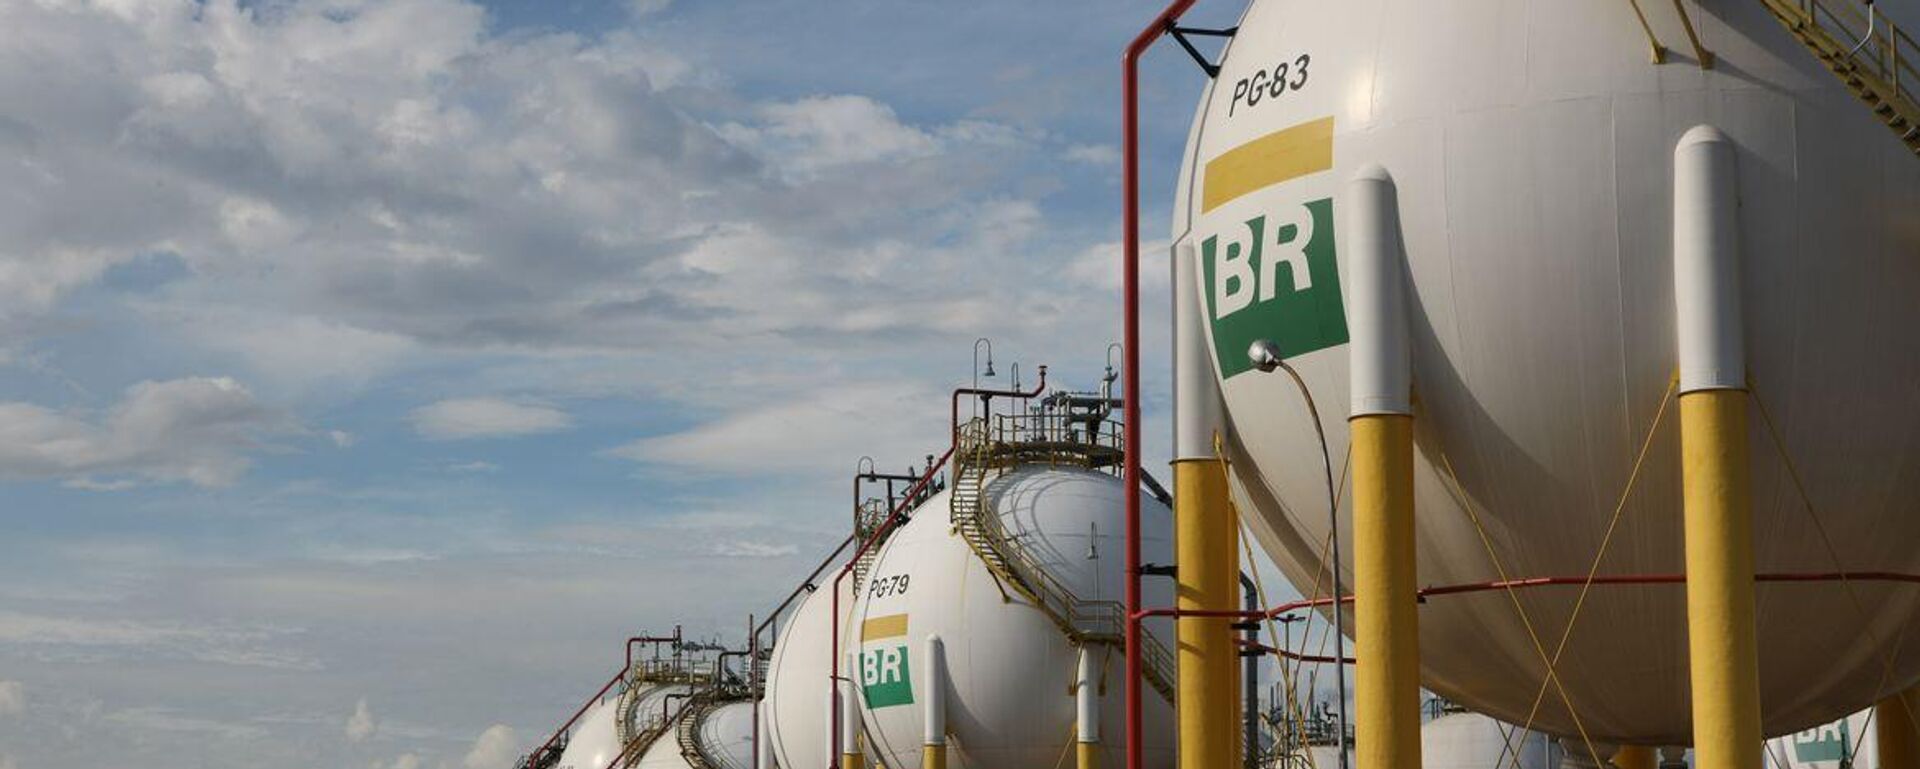 Esferas de armazenamento de gás liquefeito de petróleo (GLP) da Refinaria Duque de Caxias (Reduc), da Petrobras. Duque de Caxias (RJ), 20 de março de 2013 - Sputnik Brasil, 1920, 12.10.2023